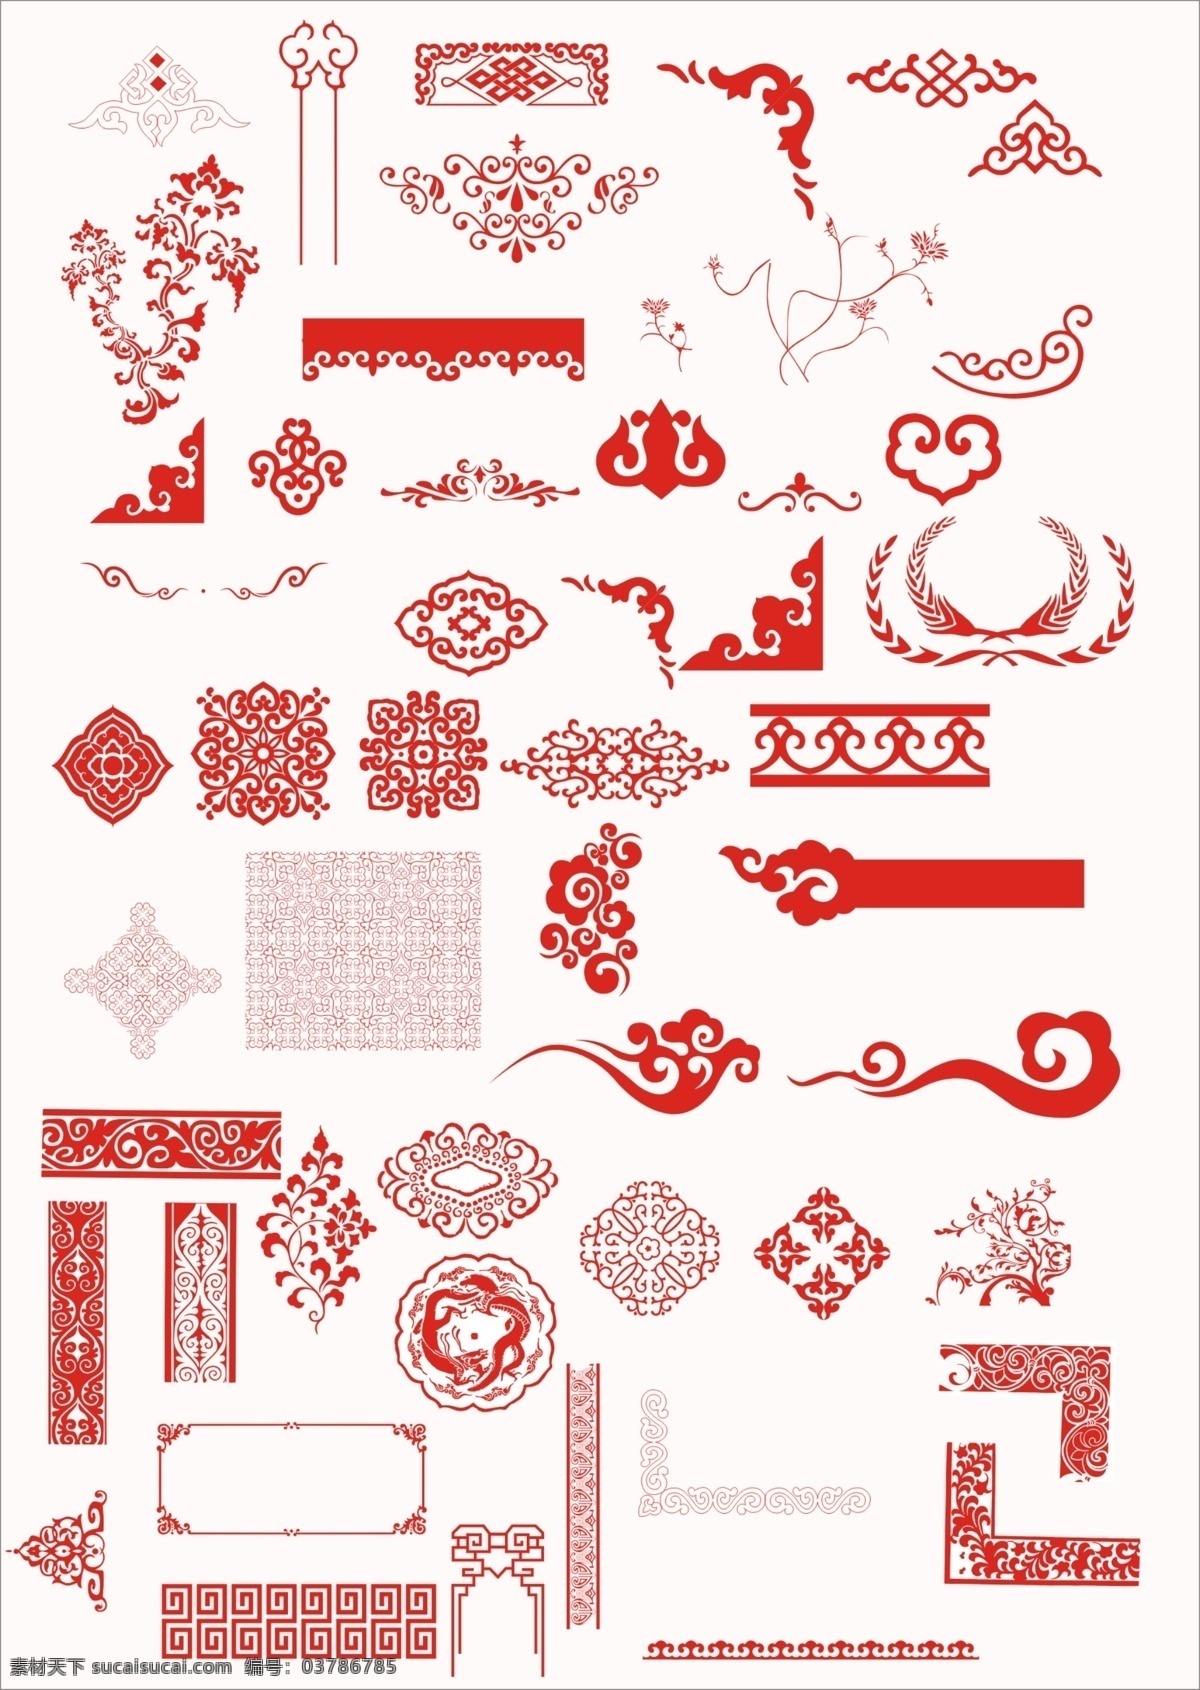 中国 传统 古典 花纹 古典花纹 传统花纹 花纹设计 古典花纹素材 祥云